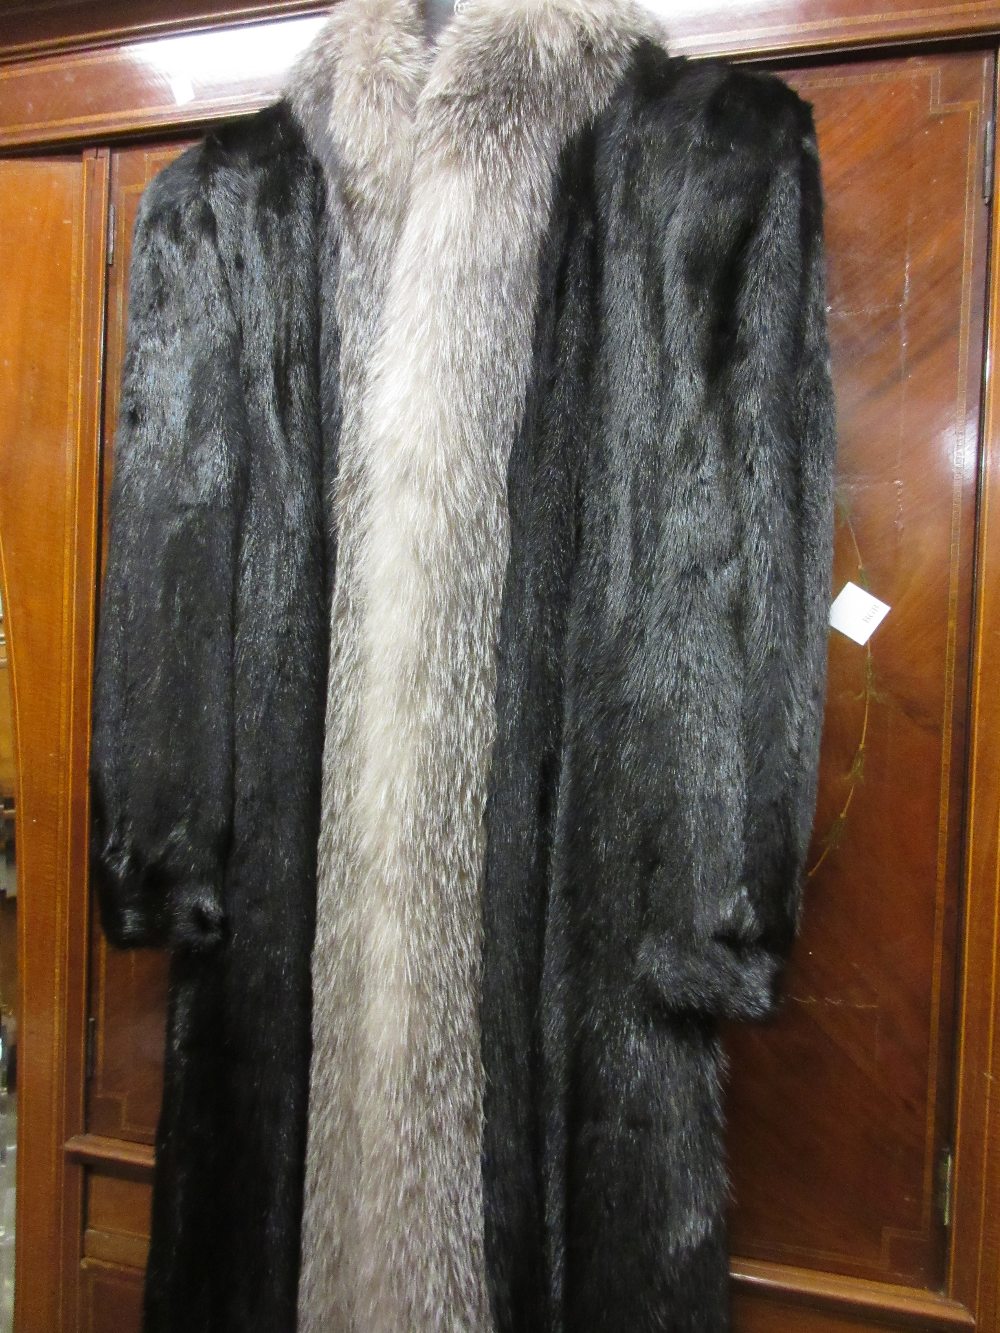 Ladies three quarter length dark brown fur coat with fox fur trim 60cm from underarm